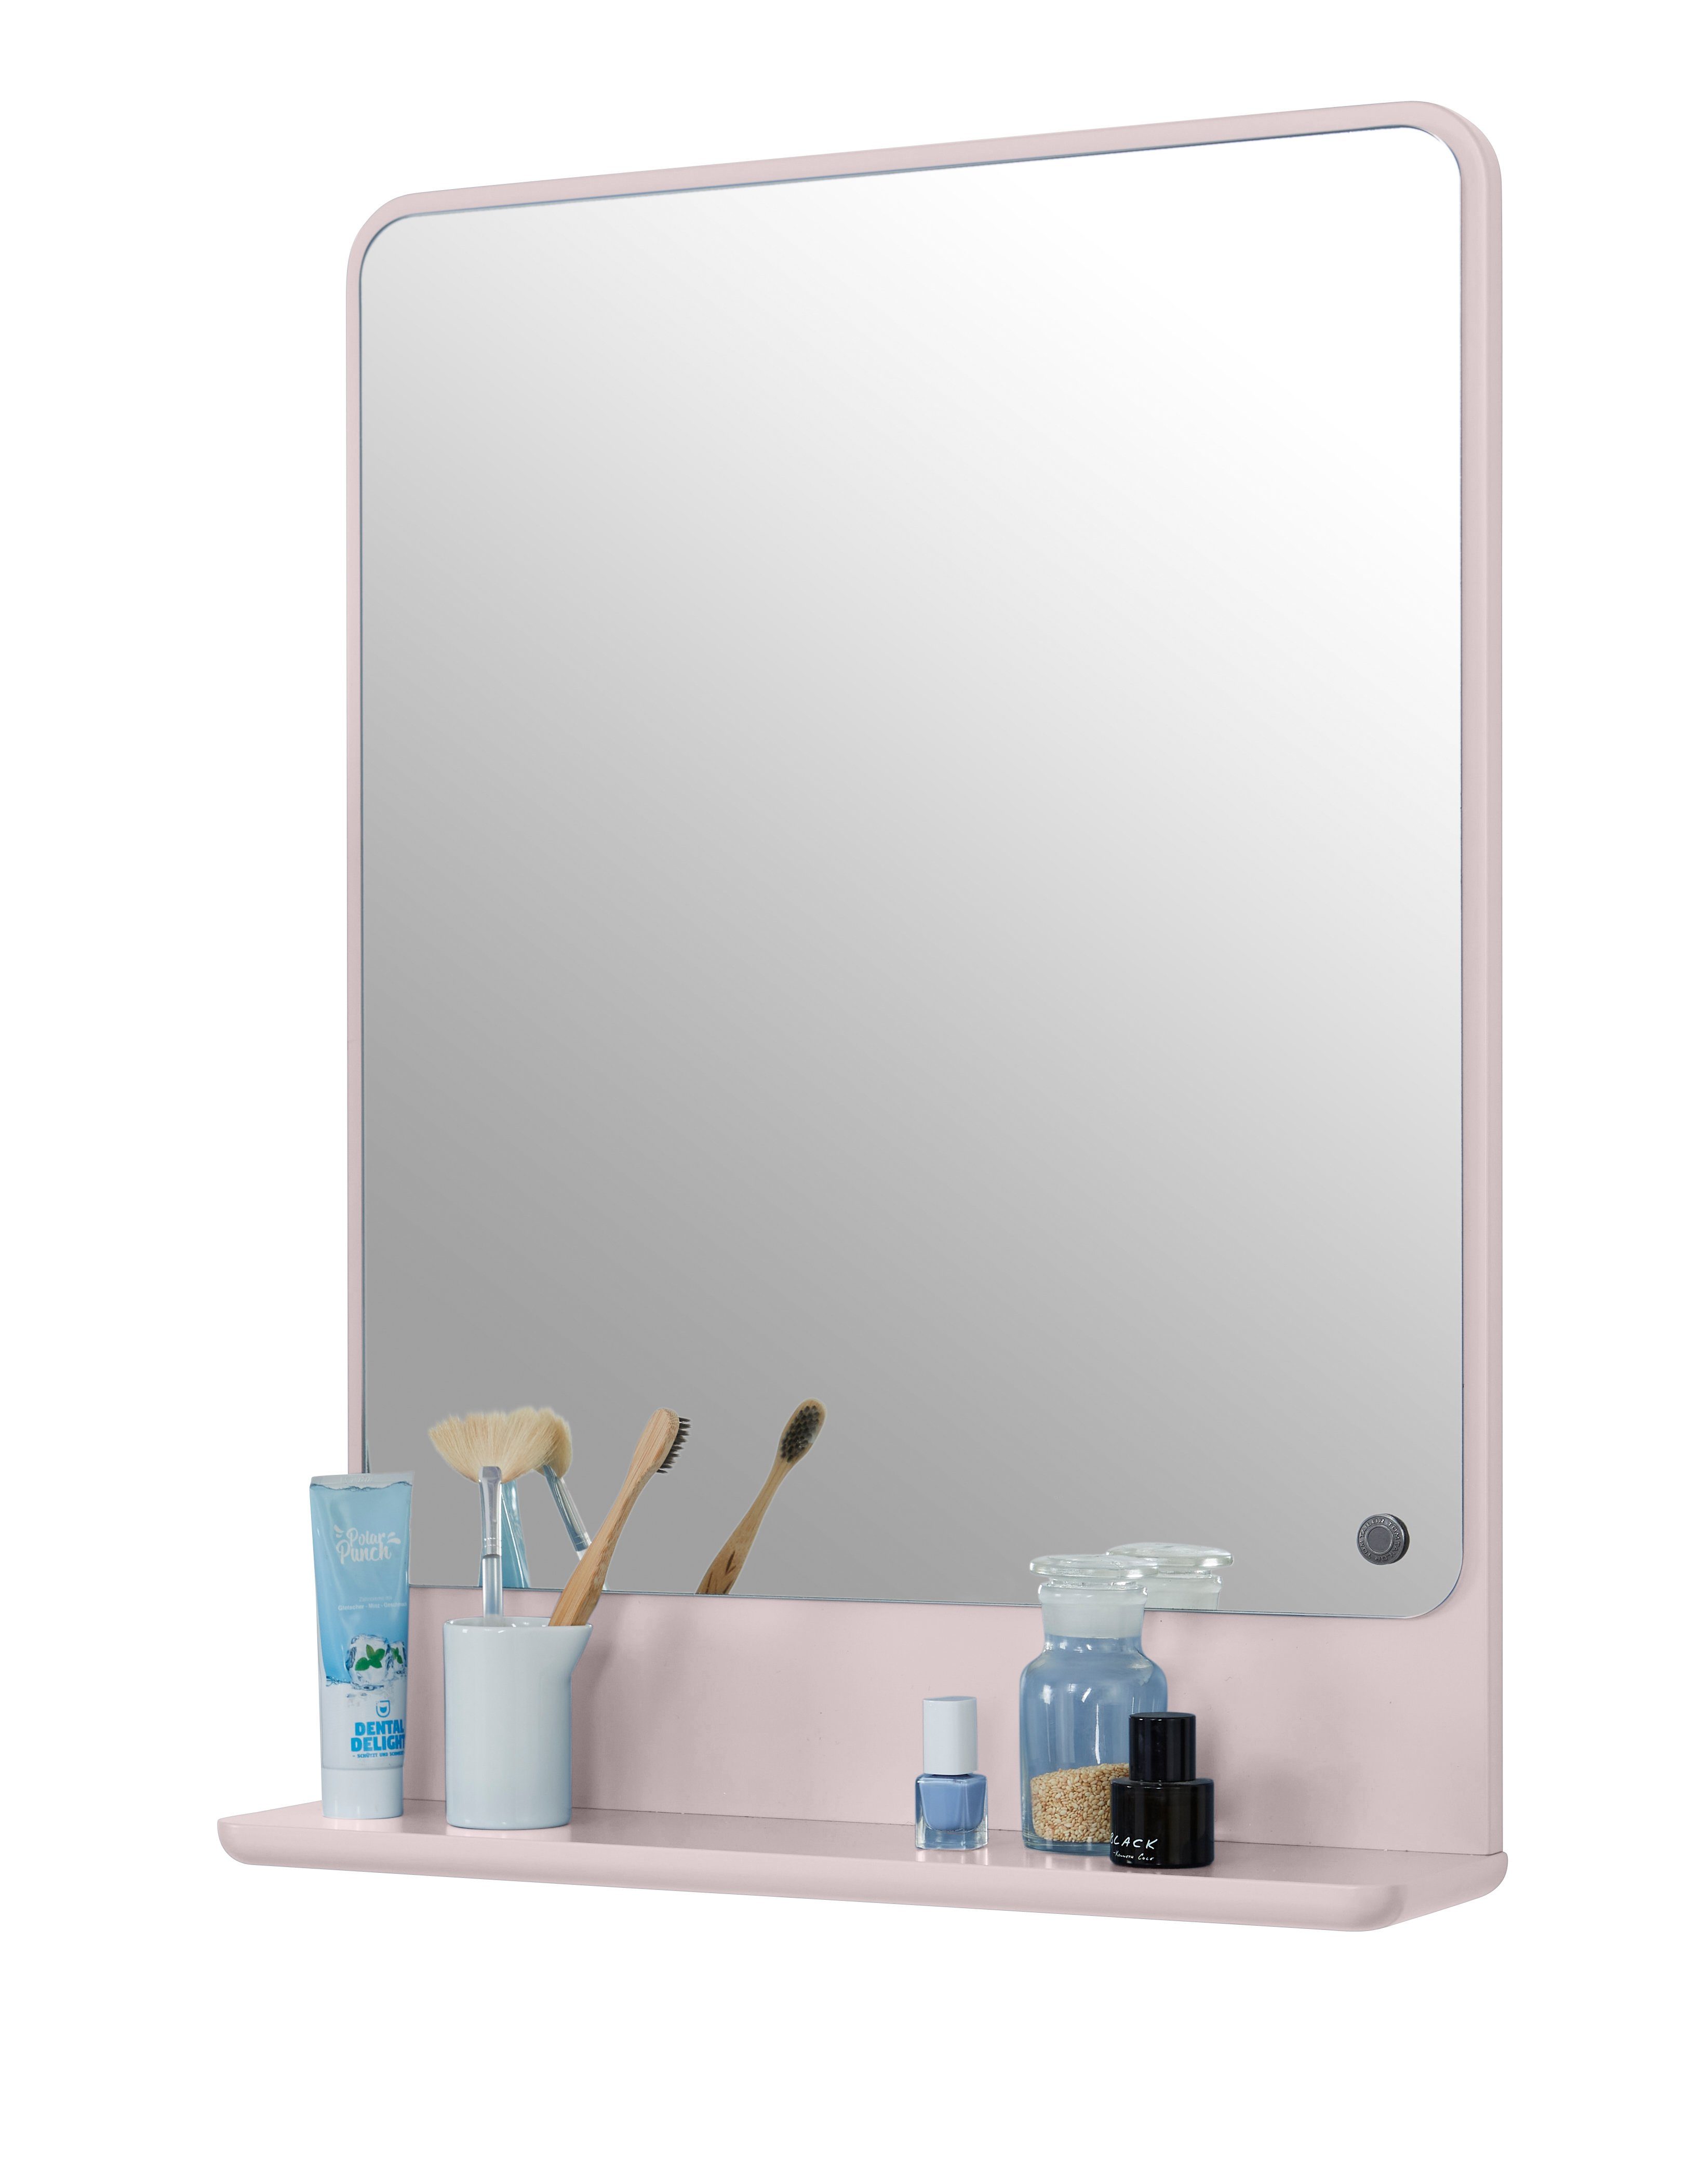 TOM TAILOR HOME Badspiegel COLOR BATH Spiegelelement - in vielen schönen Farben - 70 x 52 x 13 cm, hochwertig lackiertes MDF, gerundete Kanten rose006